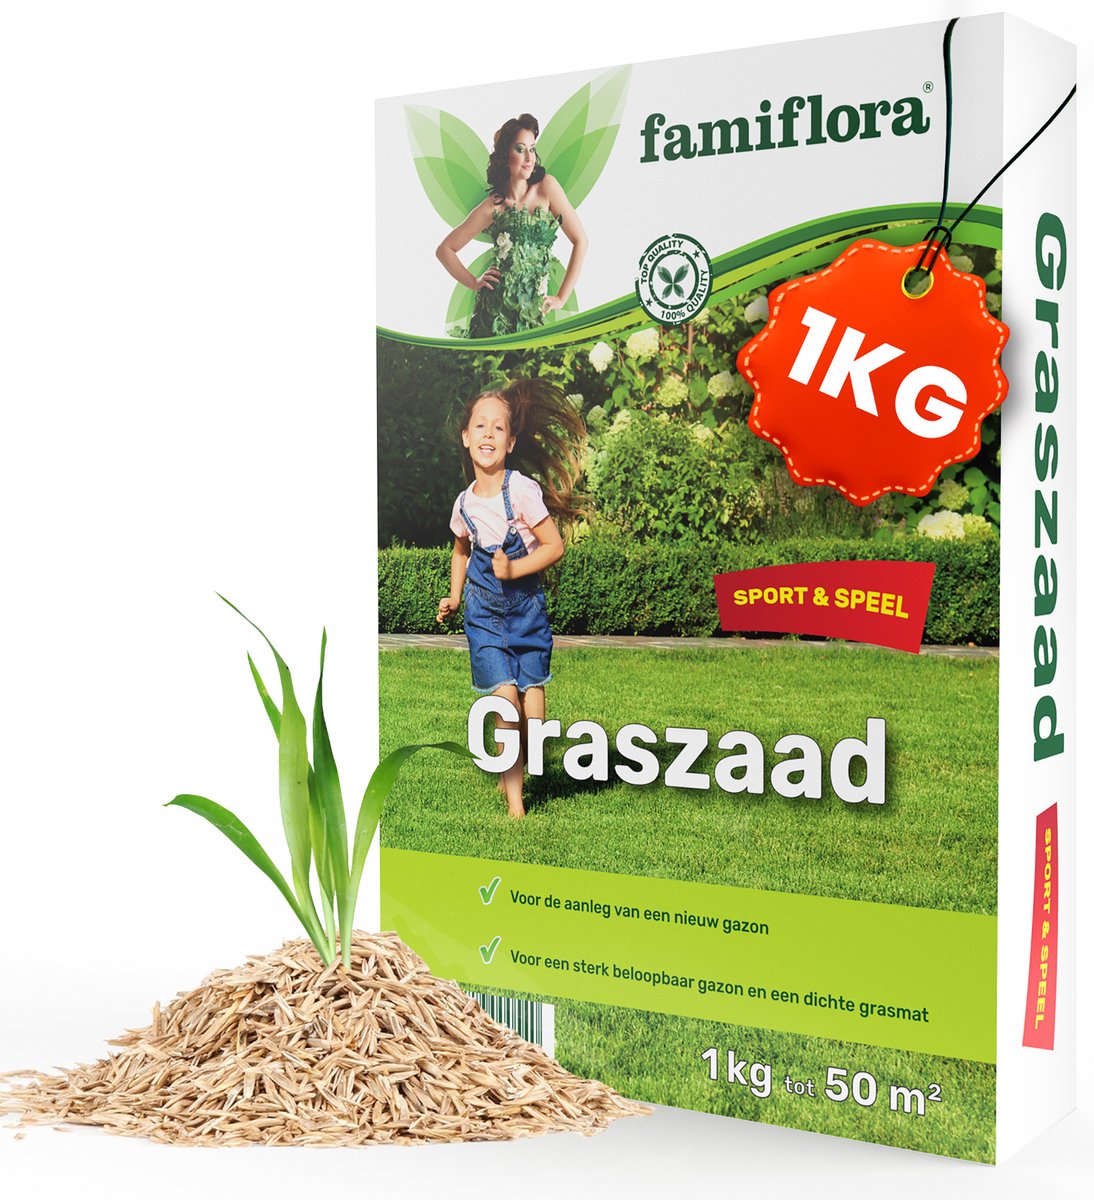 Famiflora Graszaad Speel & Sport - Sterk Graszaad voor Speelgazon en Sportgazon - 1 kg voor 50m² - Met Coating